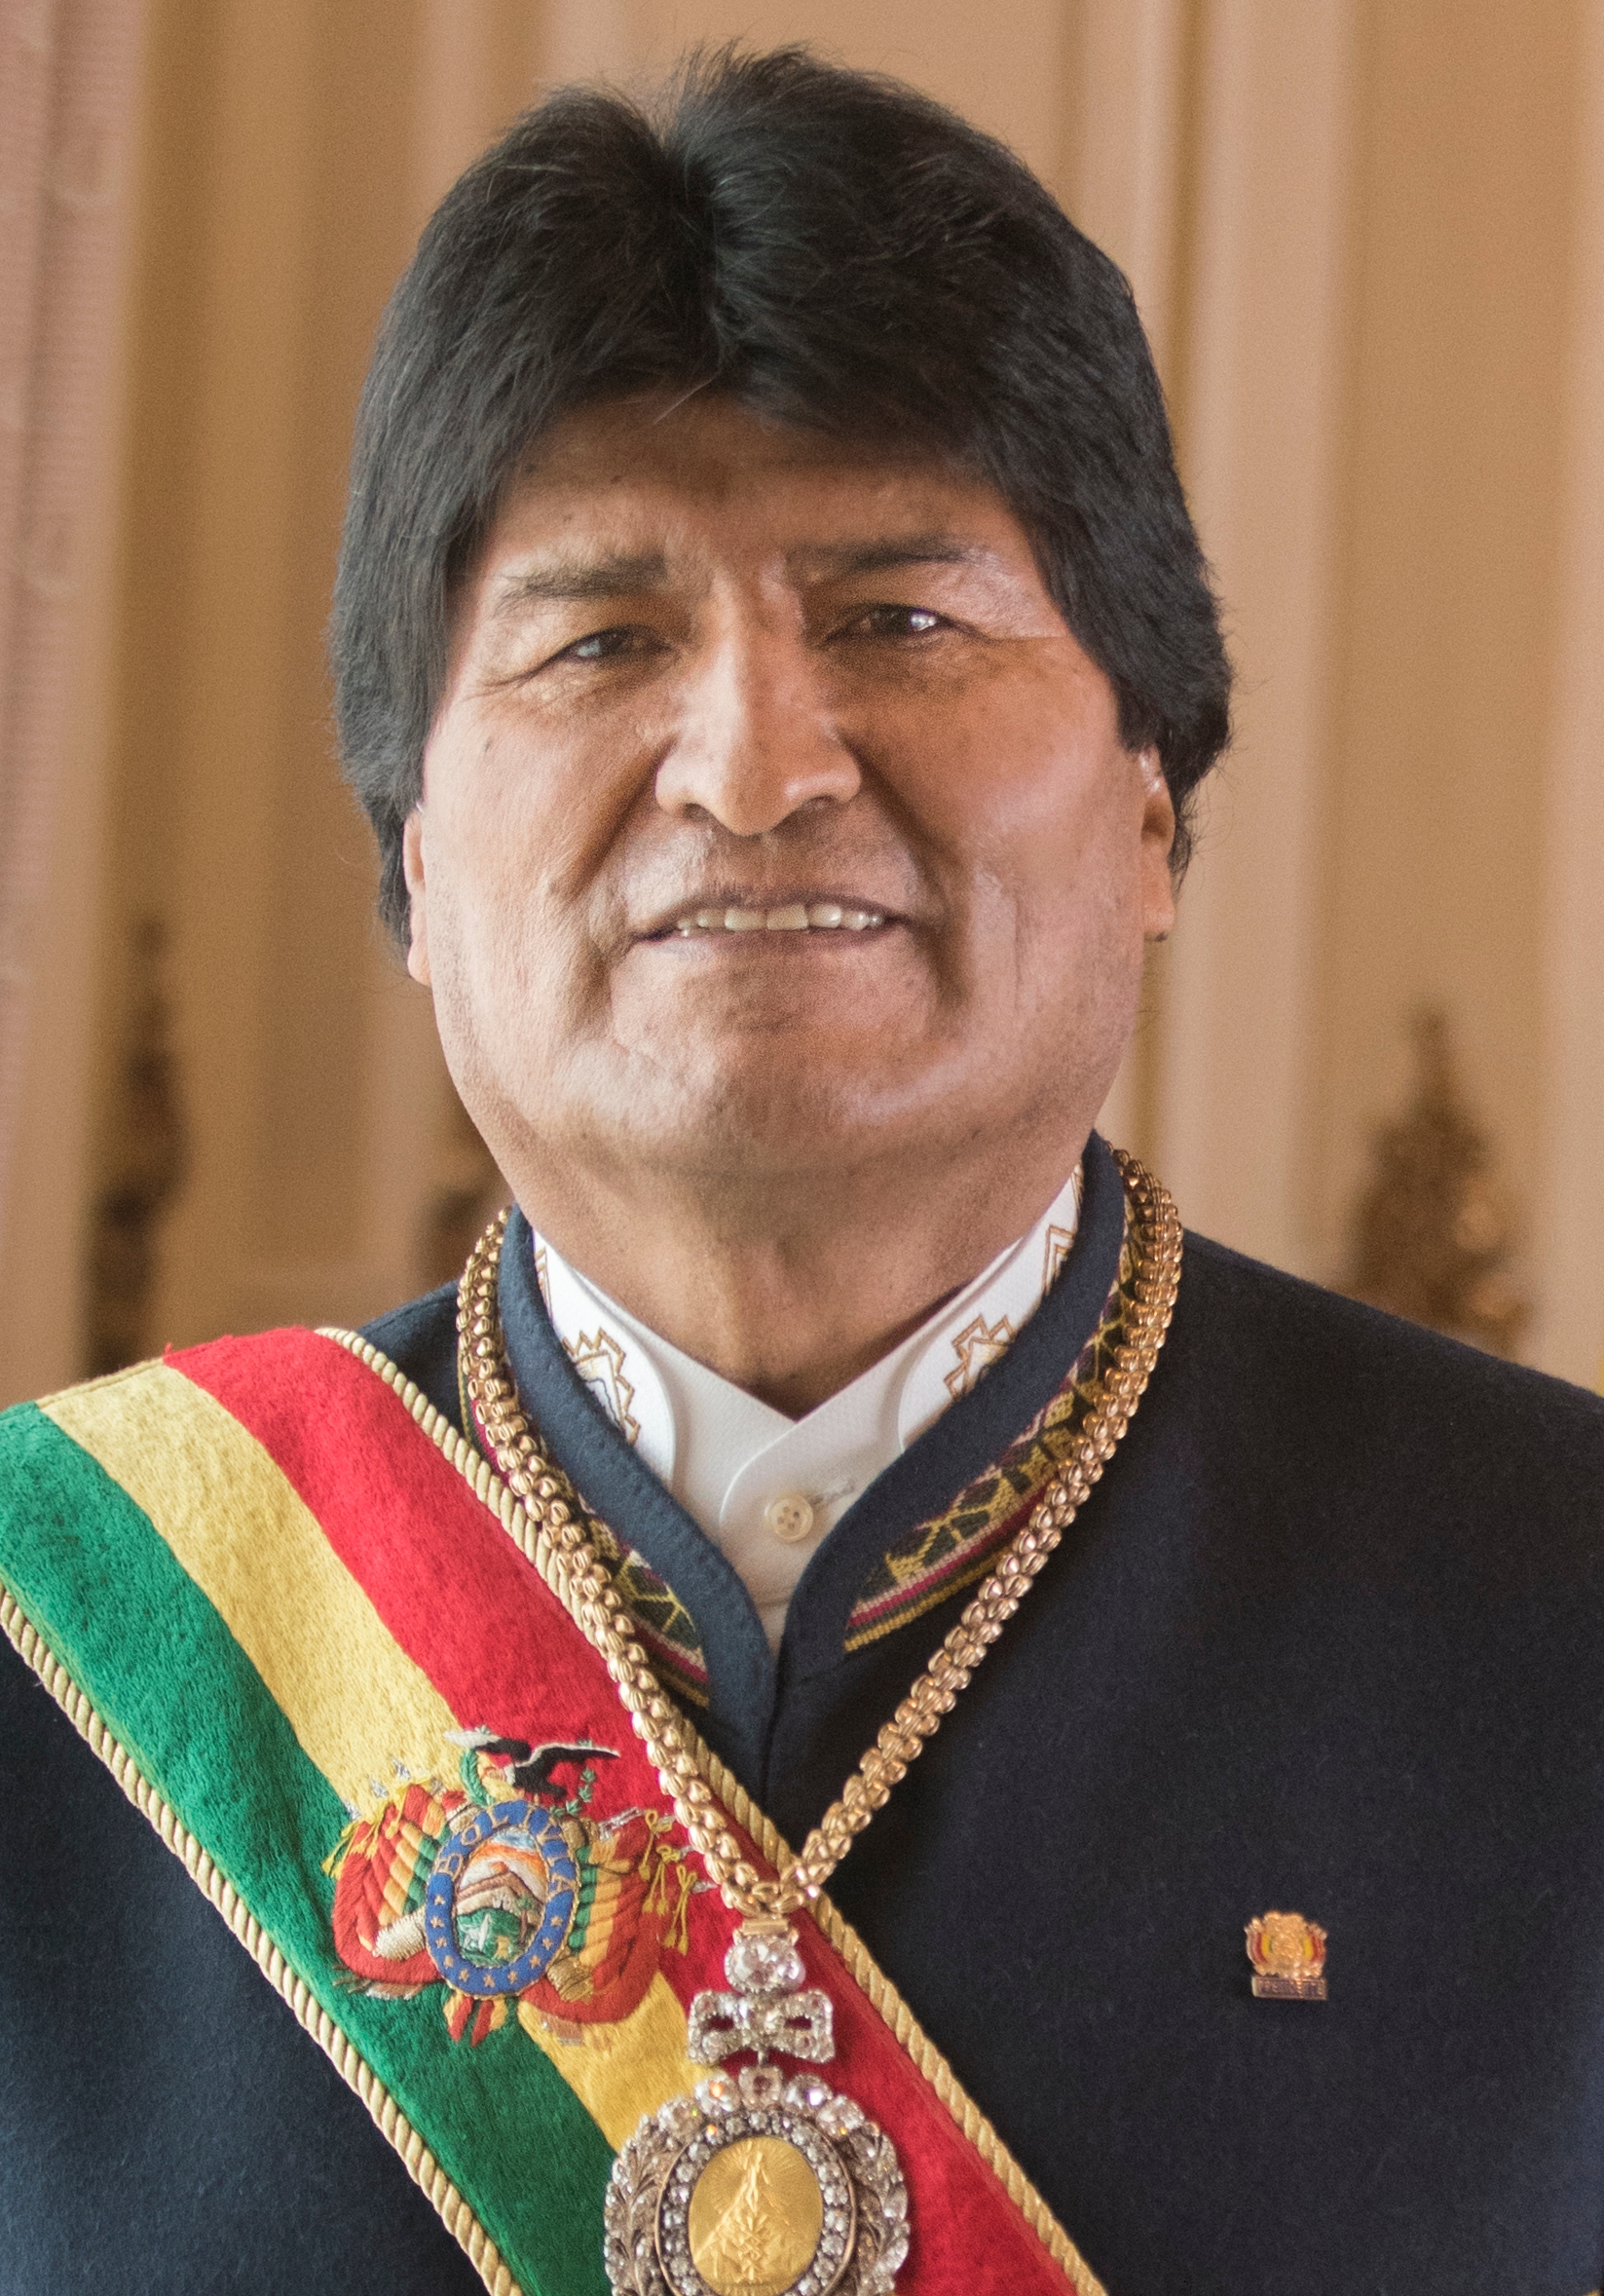 auteur Evo Morales de la citation En 2006, je suis entré dans le palais présidentiel sur la place principale de La Paz en tant que premier président autochtone de Bolivie. Notre gouvernement, sous le slogan «Bolivie Changes», s'engage à mettre fin au colonialisme, au racisme et à l'exclusion dans lesquels beaucoup de nos gens ont vécu pendant de nombreux siècles.